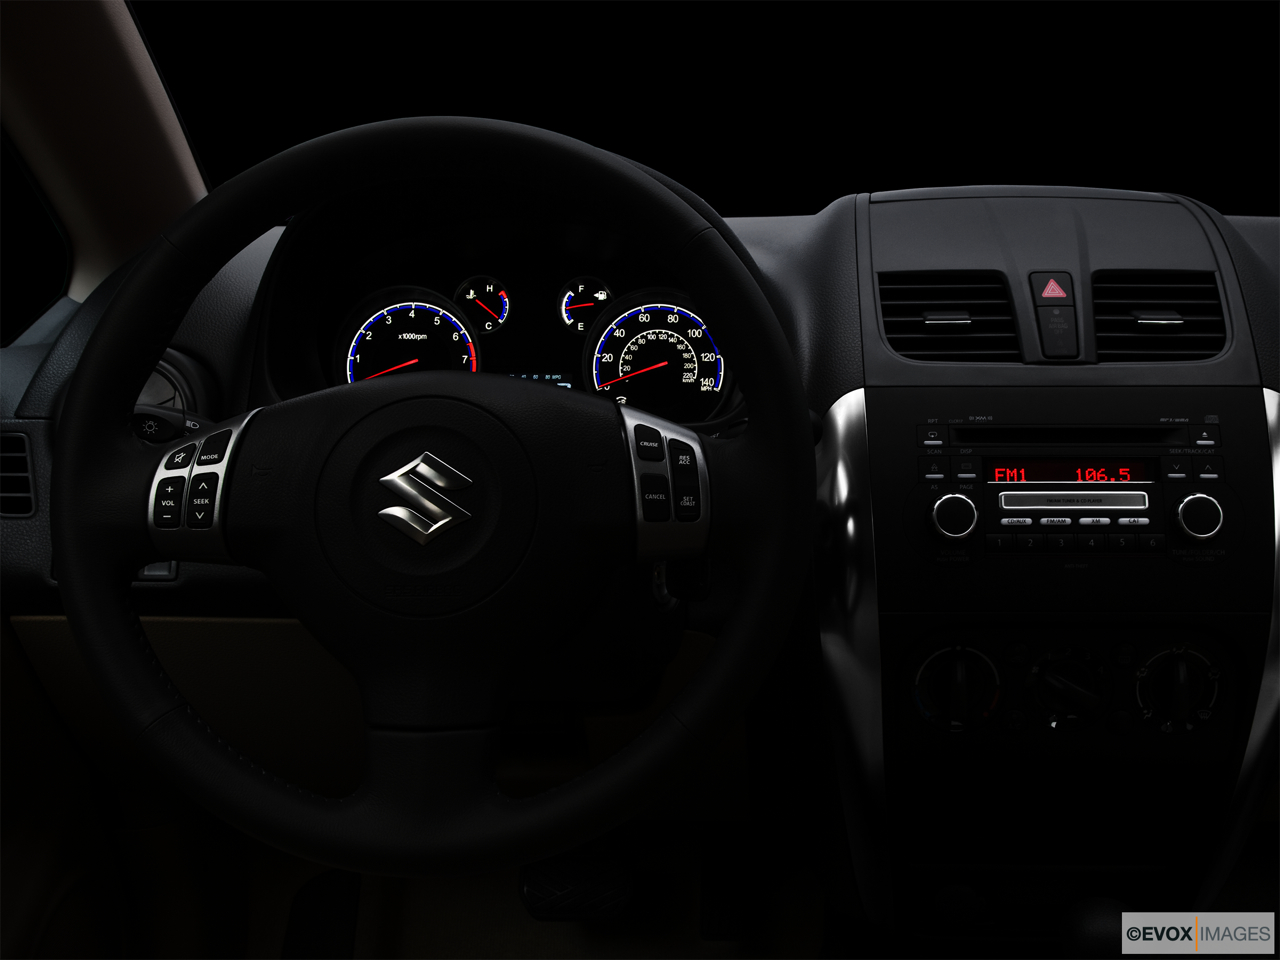 2010 Suzuki SX4 LE Popular Centered wide dash shot - "night" shot. 